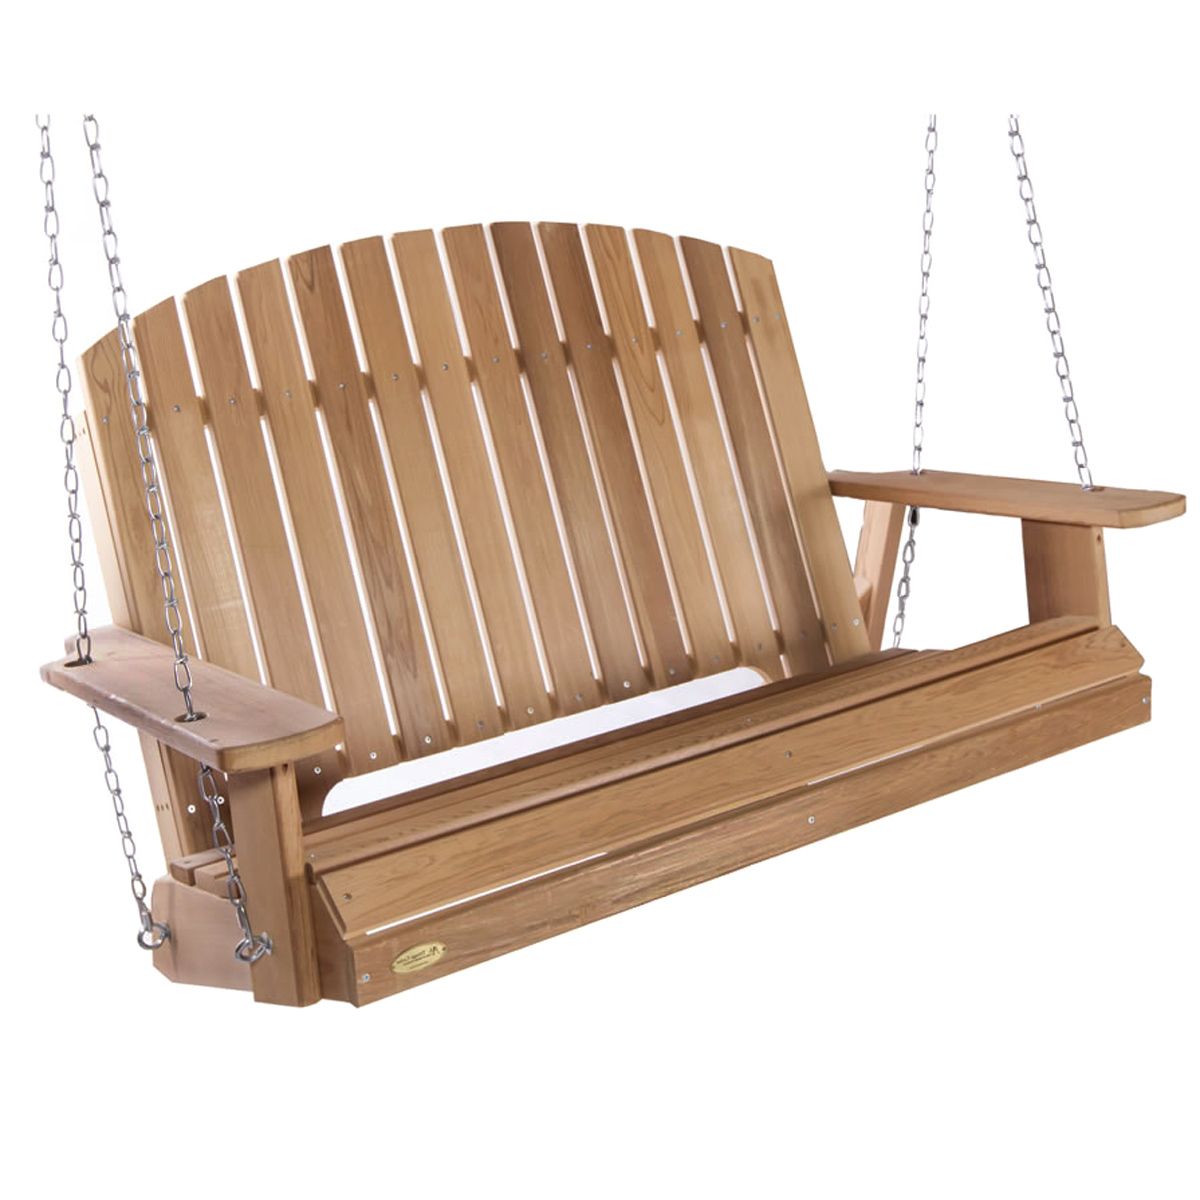 Summer Cedar: Western Red Cedar, Cedar Benches And Swings Inside 5 Ft Cedar Swings With Springs (View 17 of 25)